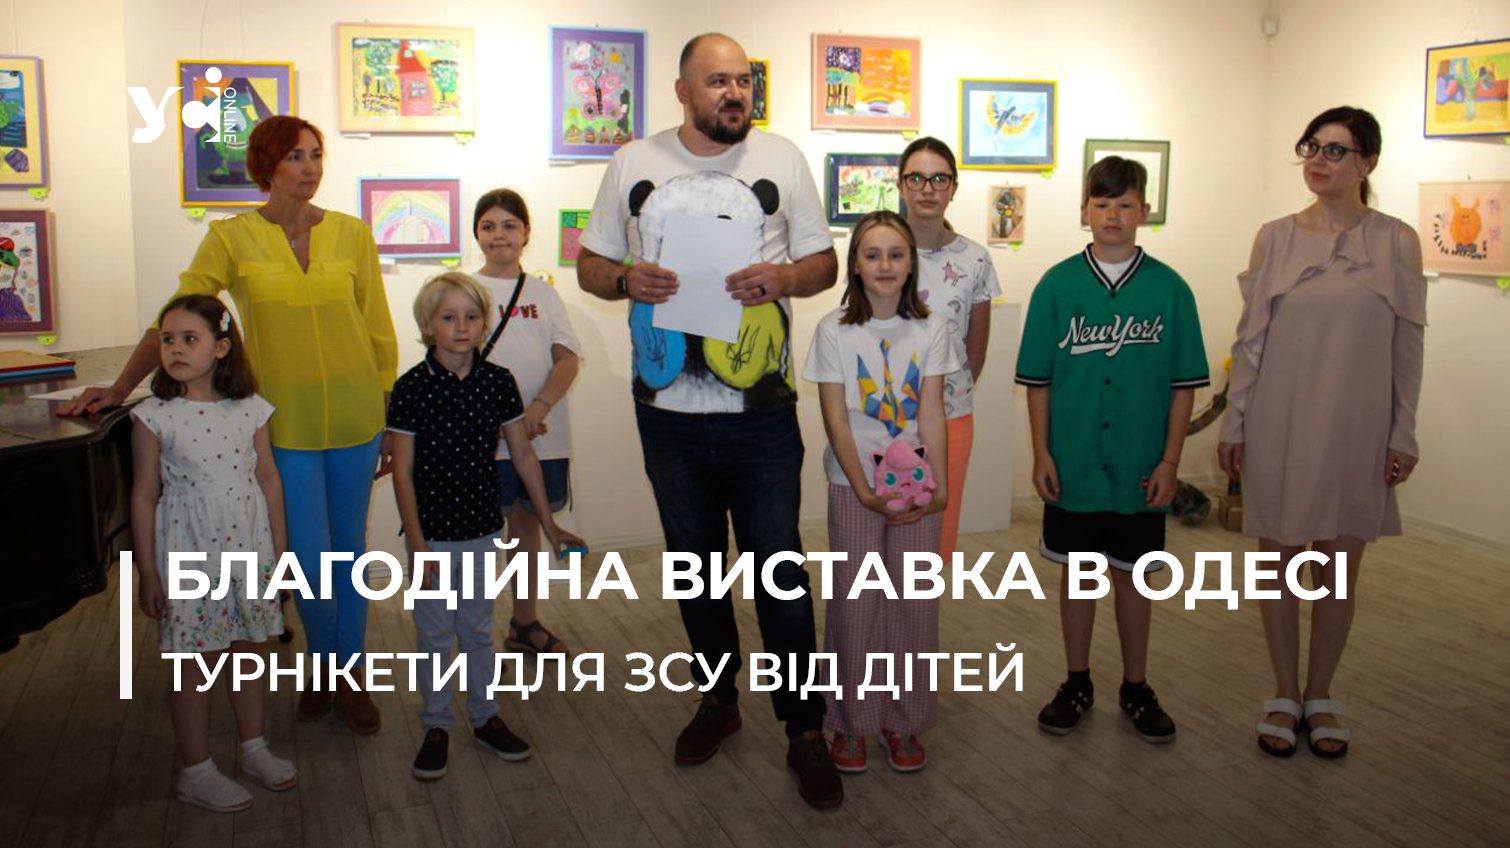 «Діти рятують життя»: в Одесі продають дитячі малюнки, щоб купити турнікети для ЗСУ (фото, відео) «фото»